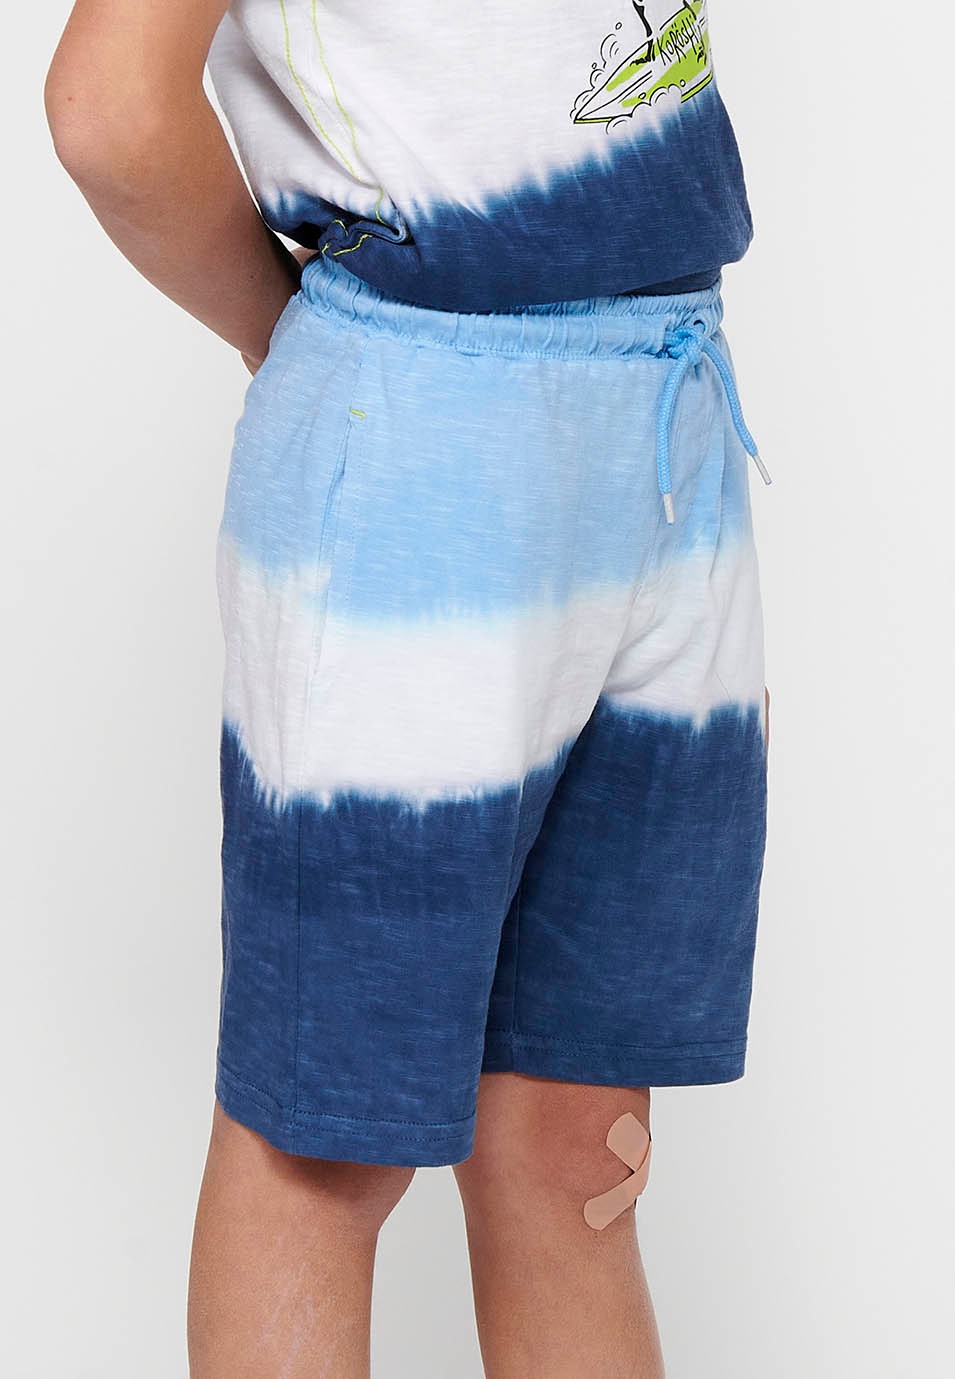 Pantalons curts amb Cintura engomada ajustable amb cordó i Estampat degradat en tres tons de Color Blau per a Nen